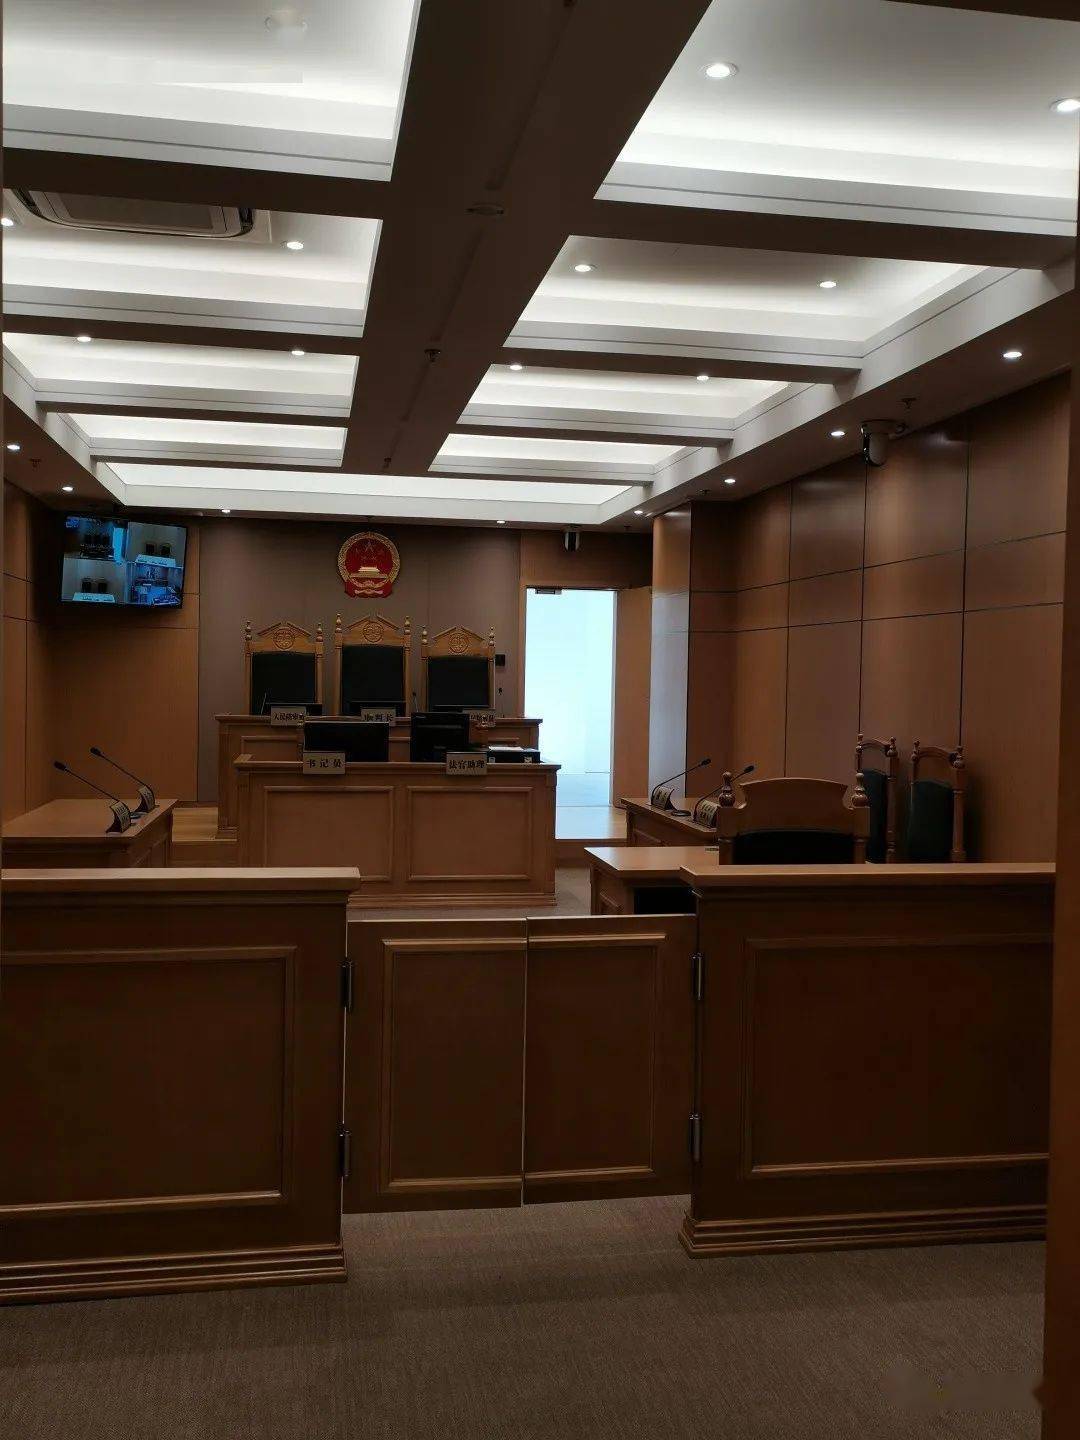 静安法院新立案大厅启用,跟镜头看看现场环境吧!